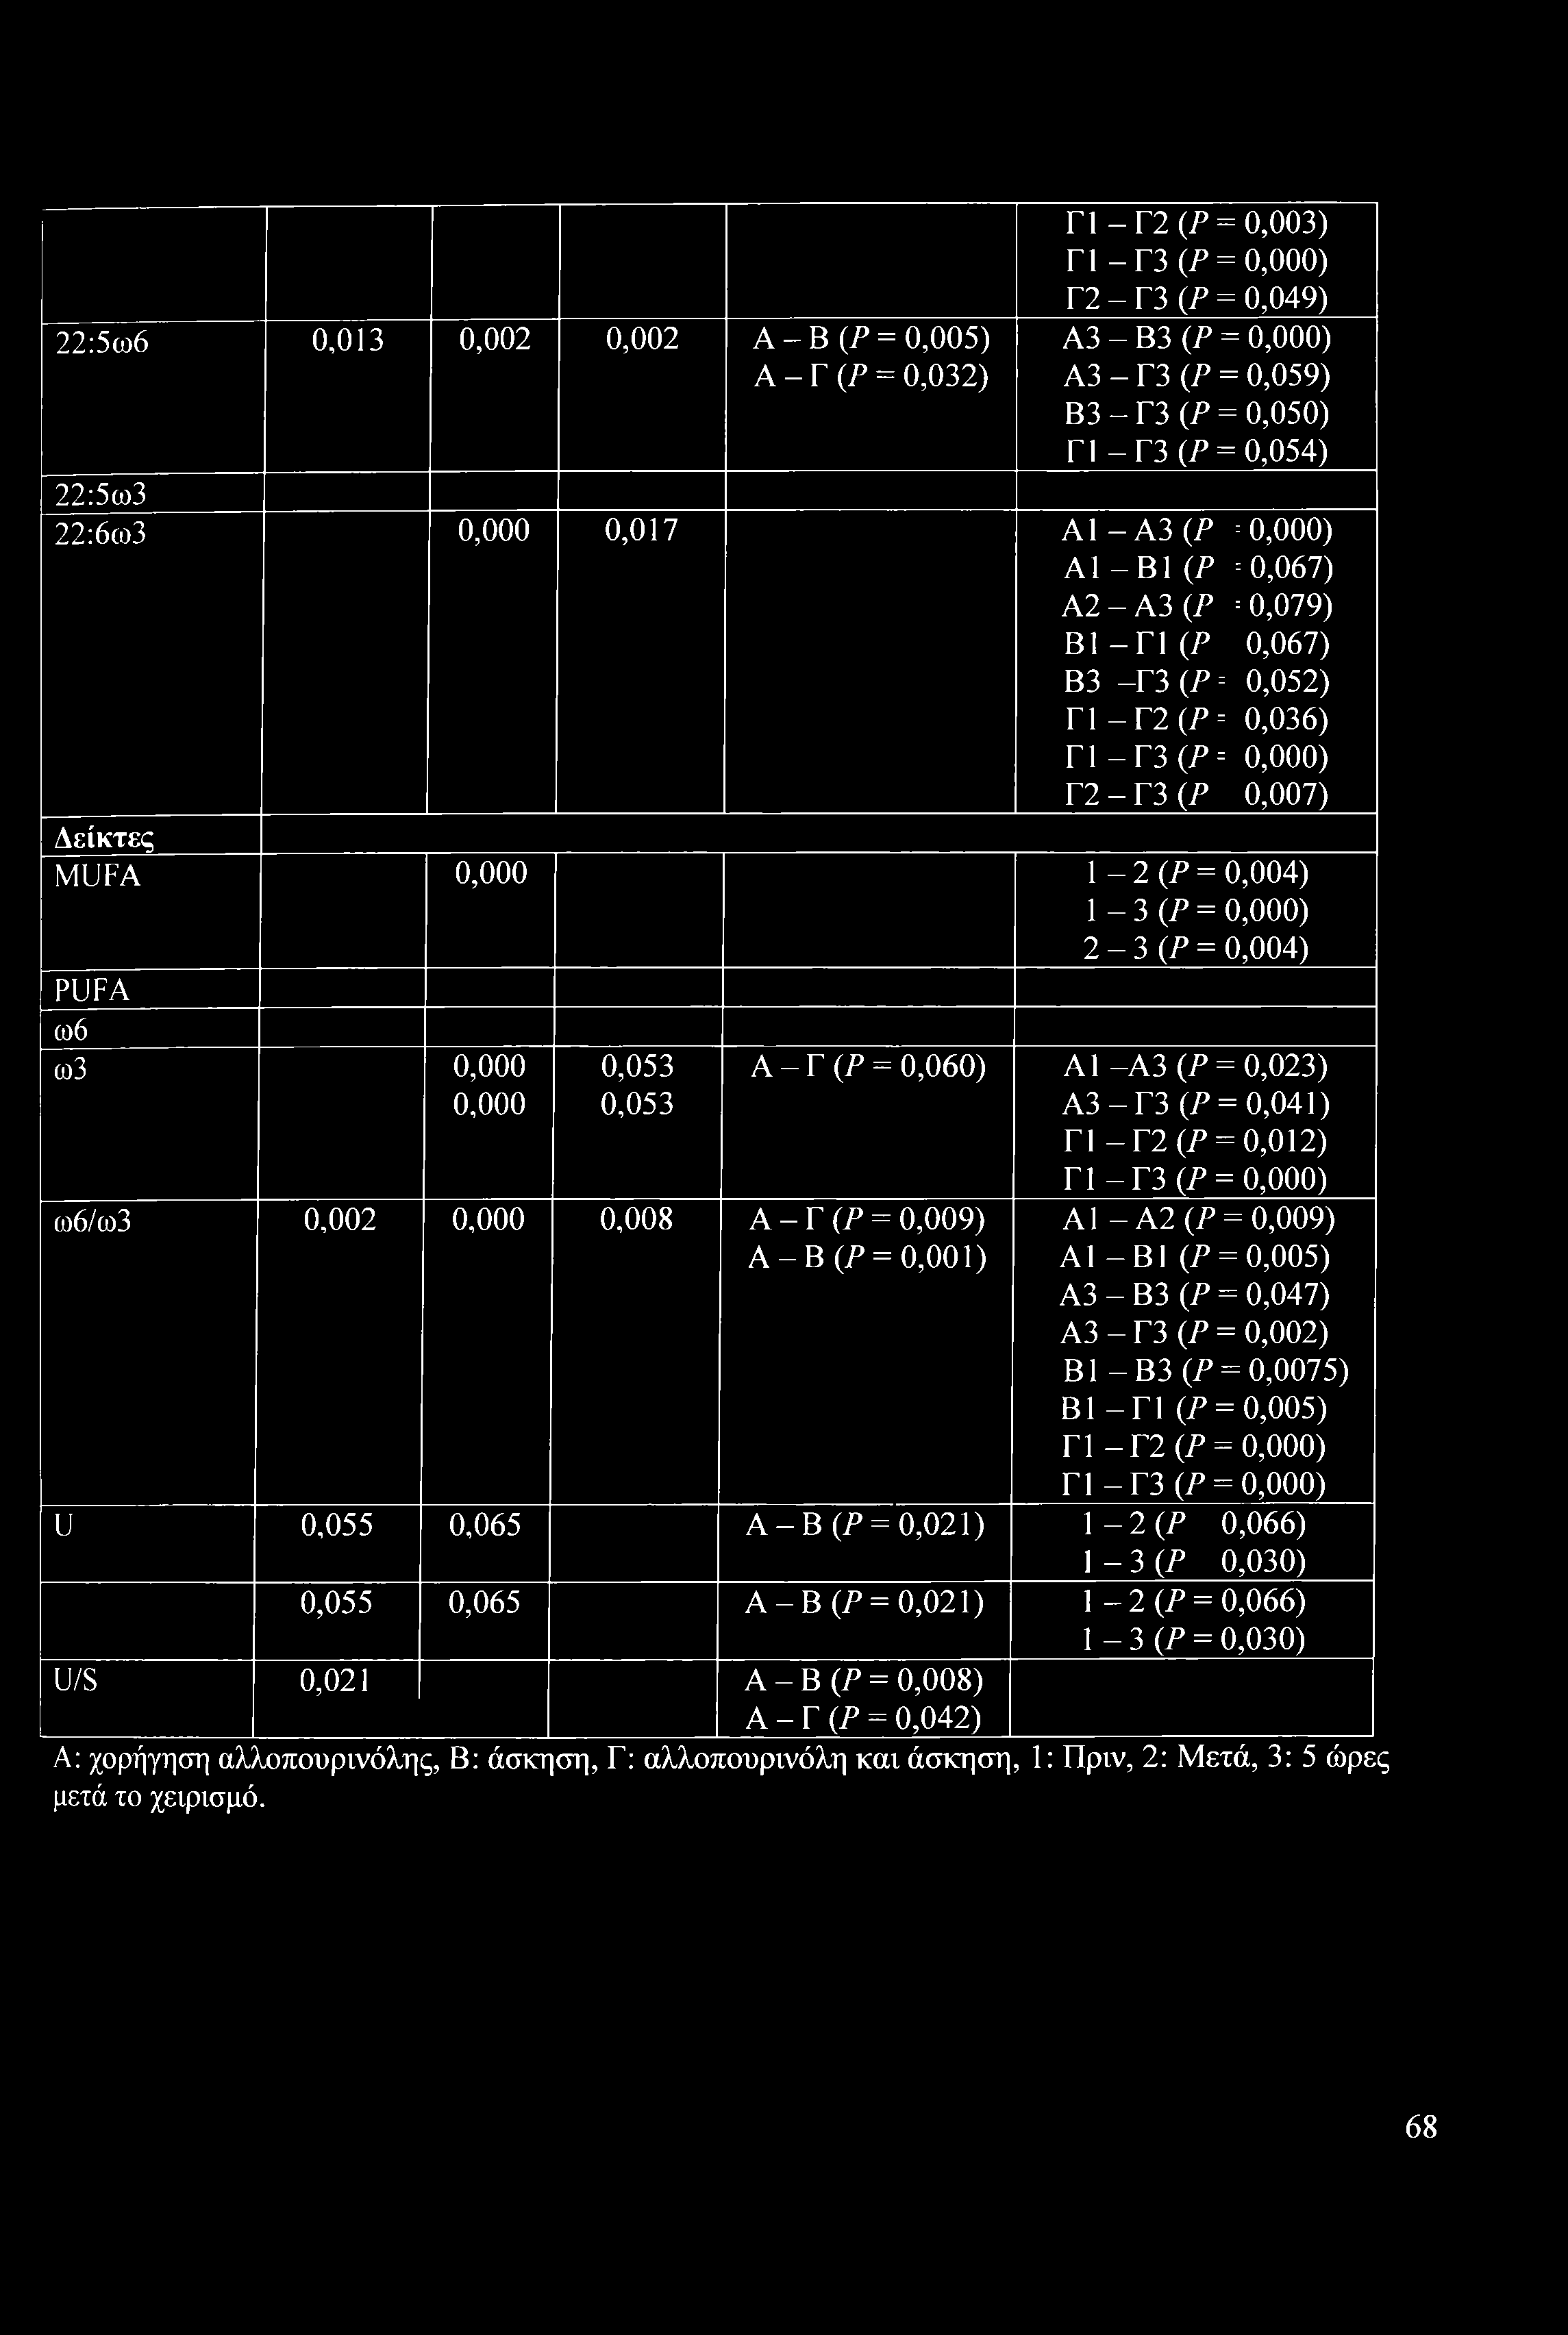 P B3 -Γ3(P= Γ1 -Γ2 (P-- Γ1 -Γ3 0P = Γ2 - Γ3 (P -- 0,000) = 0,067) = 0,079) 0,067) 0,052) 0,036) 0,000) 0,007) Δείκτες MUFA 0,000 1-2 OP = 0,004) 1-3 (P = 0,000) 2-3 (P = 0,004) PUFA ω6 co3 0,000